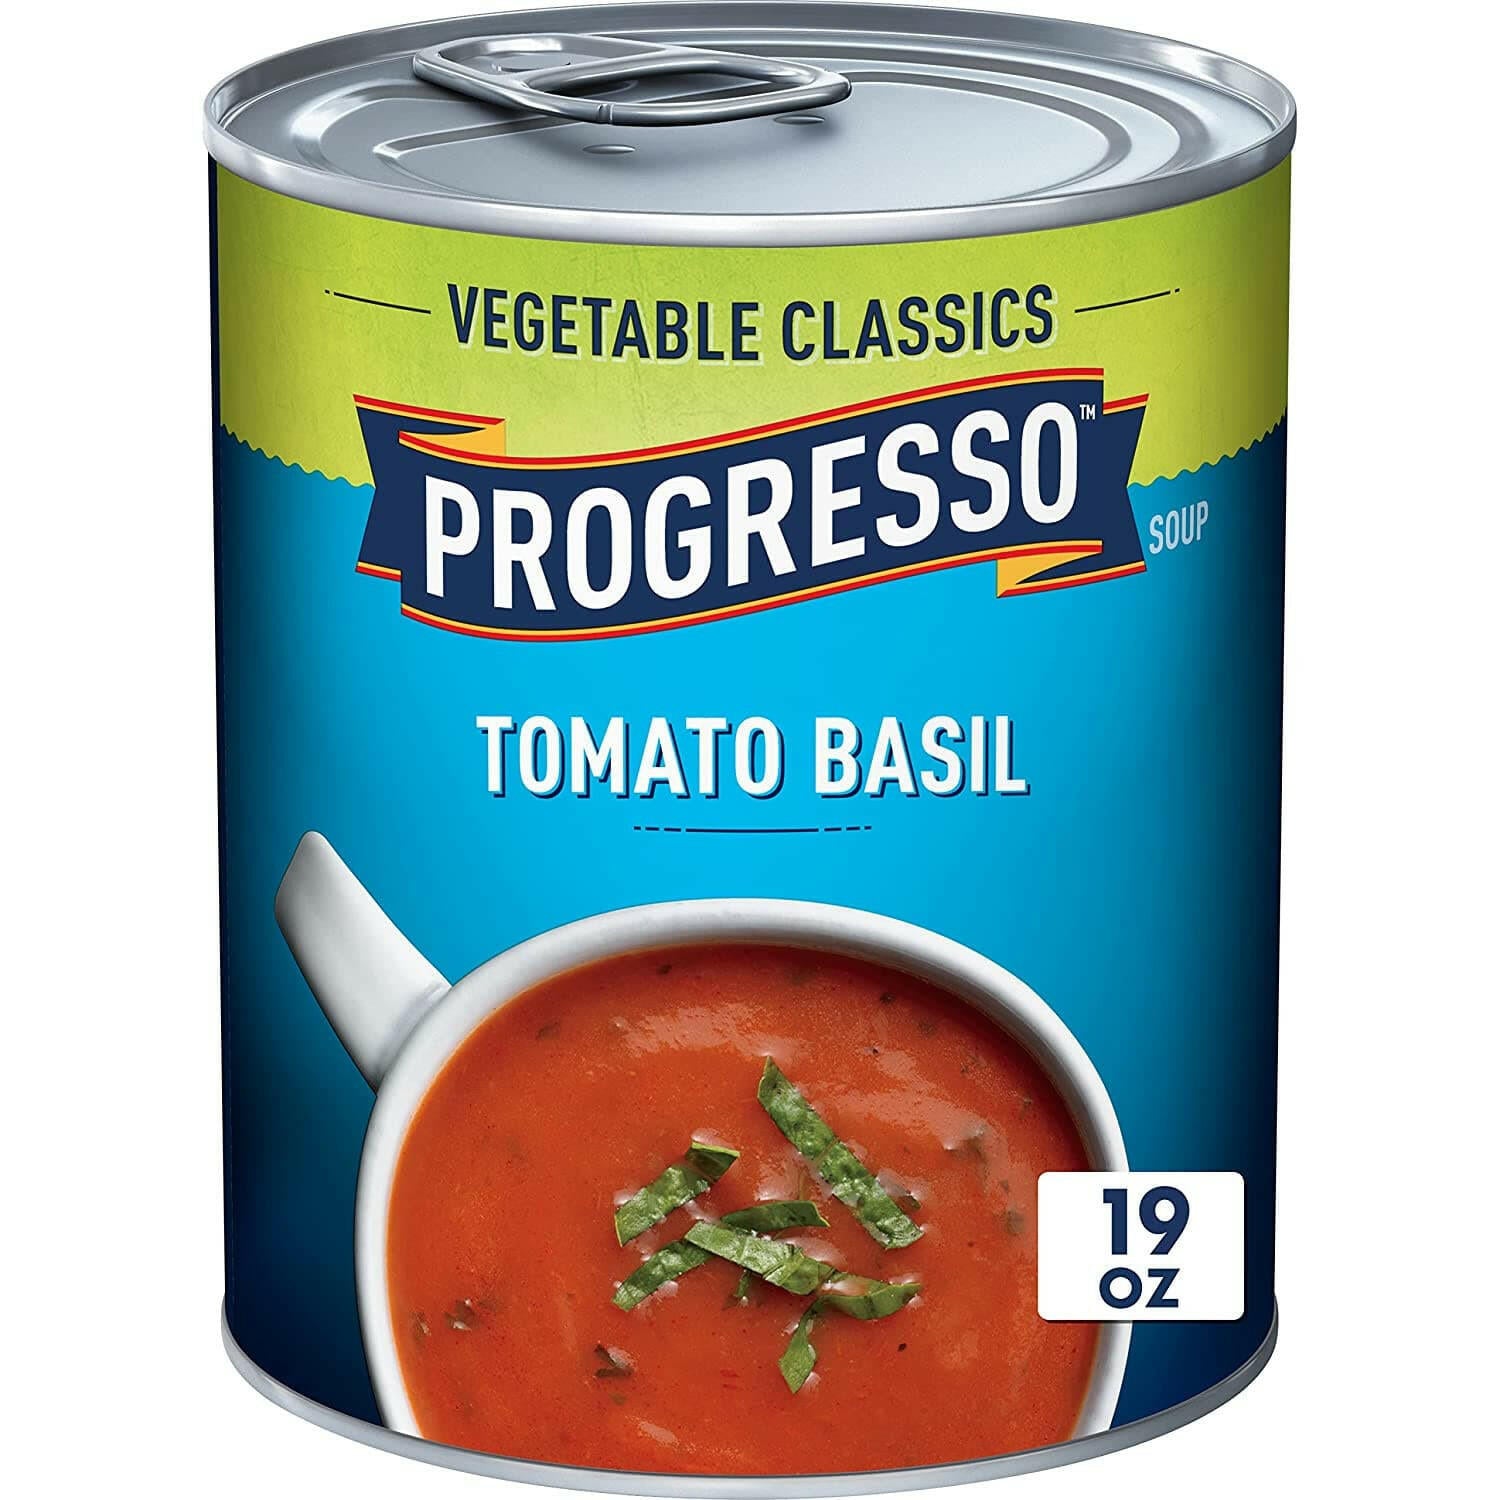 Progresso Tomato Basil 19oz.